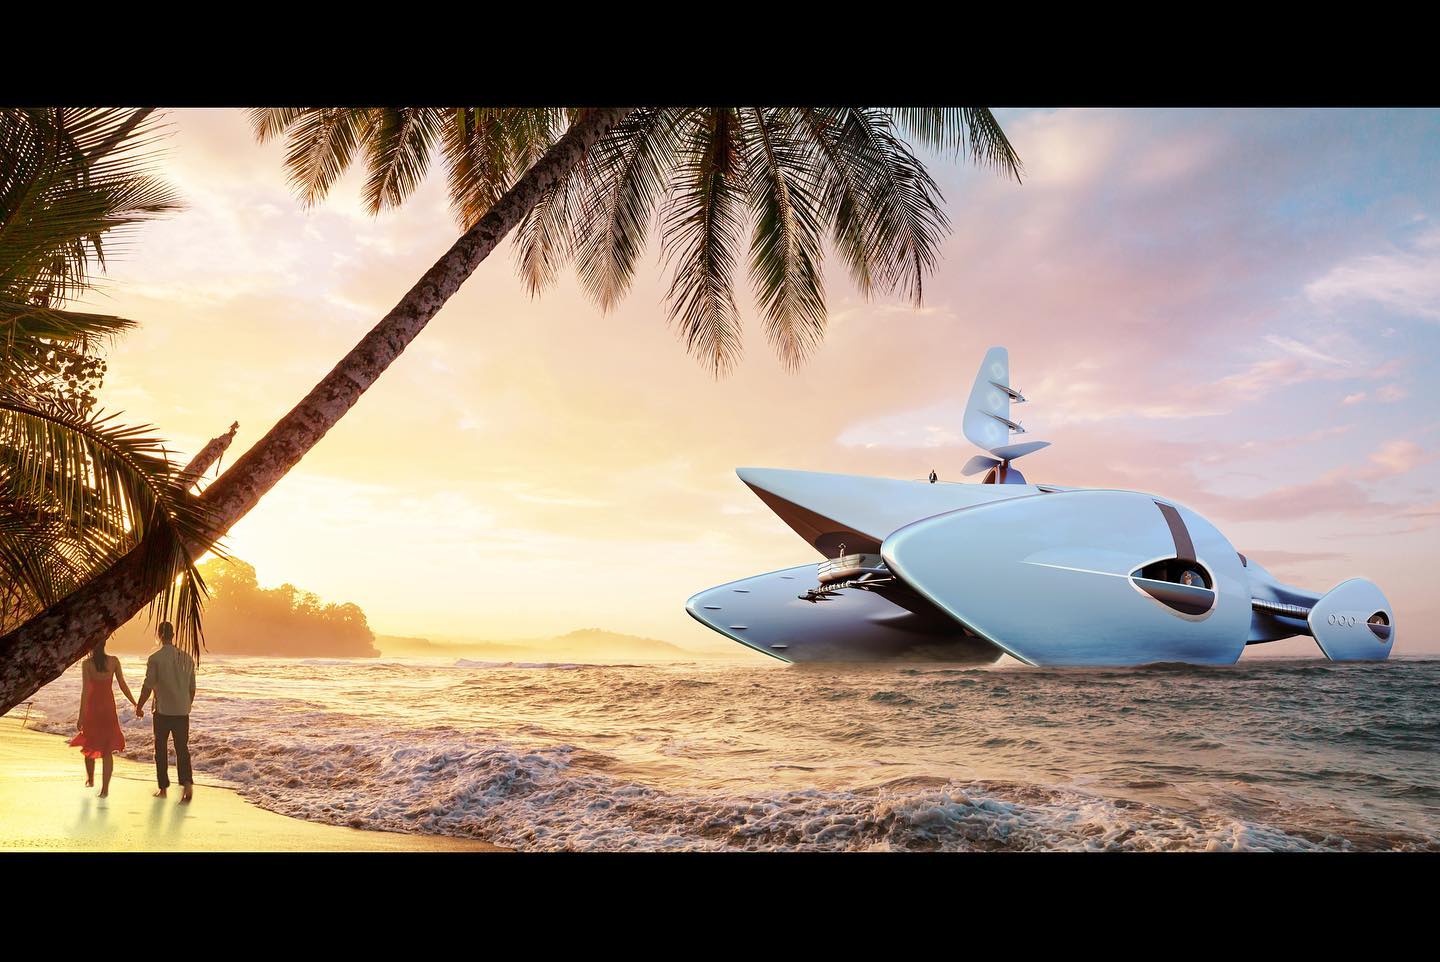 imagen 8 de Decadence, un catamarán inspirado en el diseño de los coches de los felices años 20.